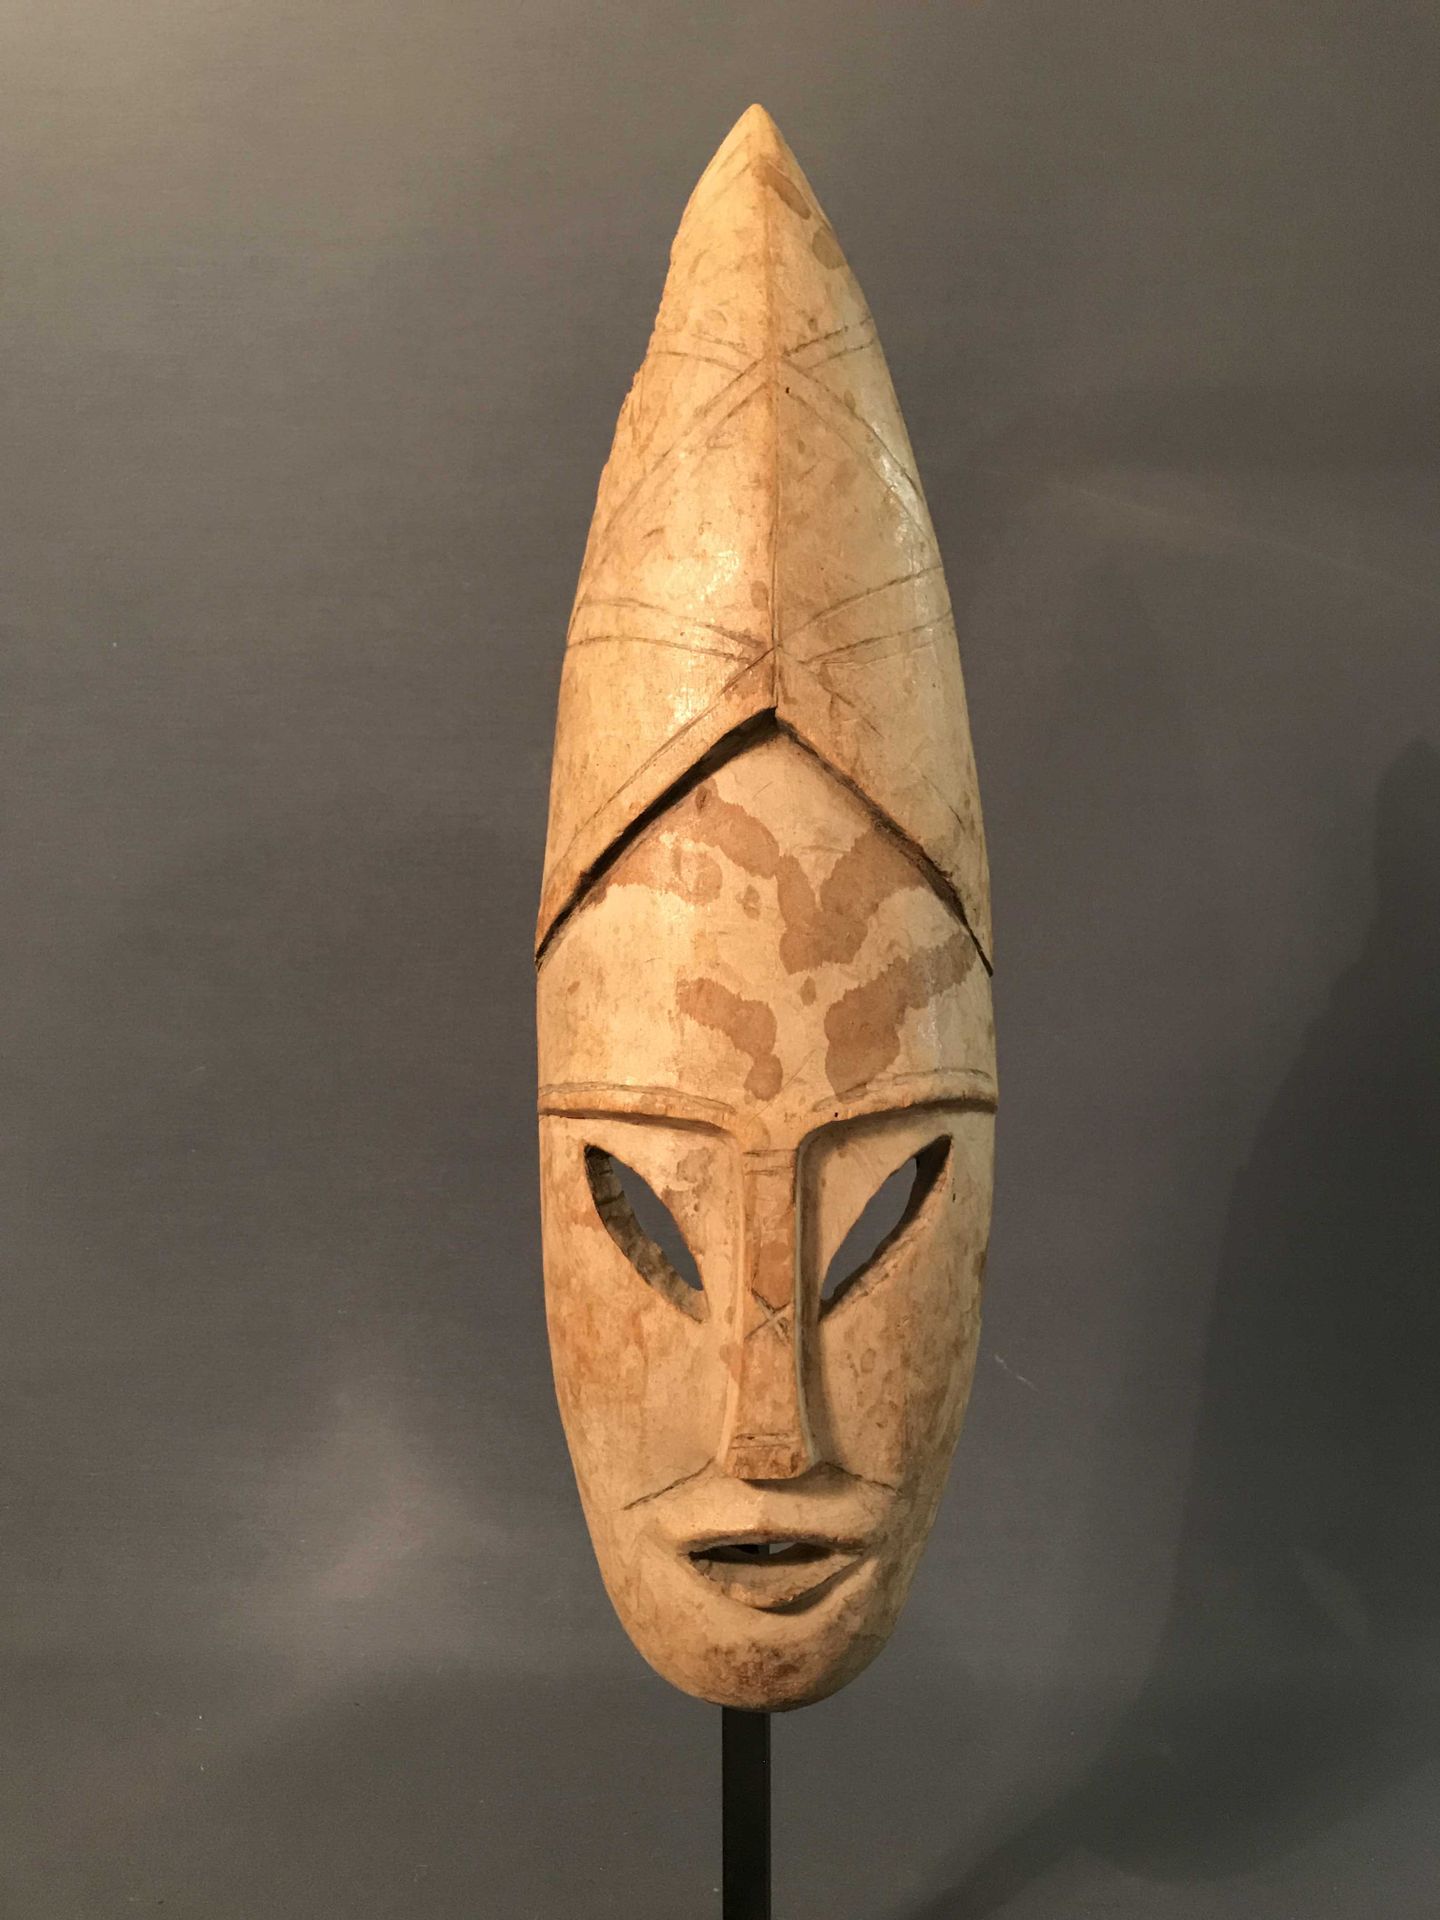 Null 一对面具 
马哈法利 - 马达加斯加
轻型木材 
20世纪中叶 
合理的状态
50 x 15 x 6厘米 
私人收藏 
马达加斯加 - 一对50厘米的&hellip;